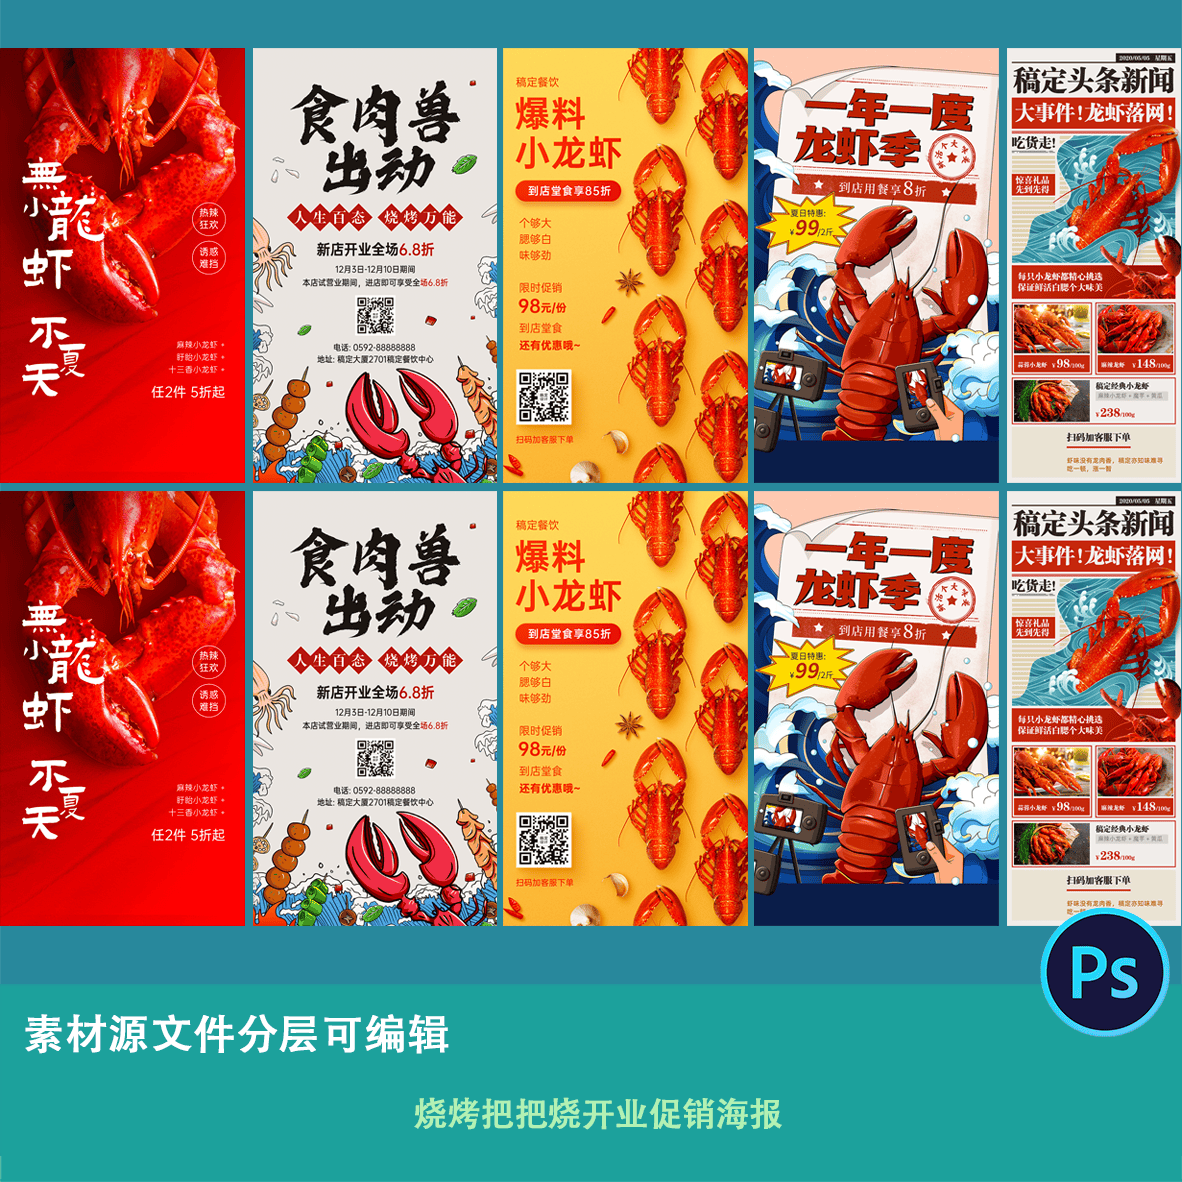 烧烤小龙虾季美食节卡通手绘活动宣传促销系列海报设计素材文件ps